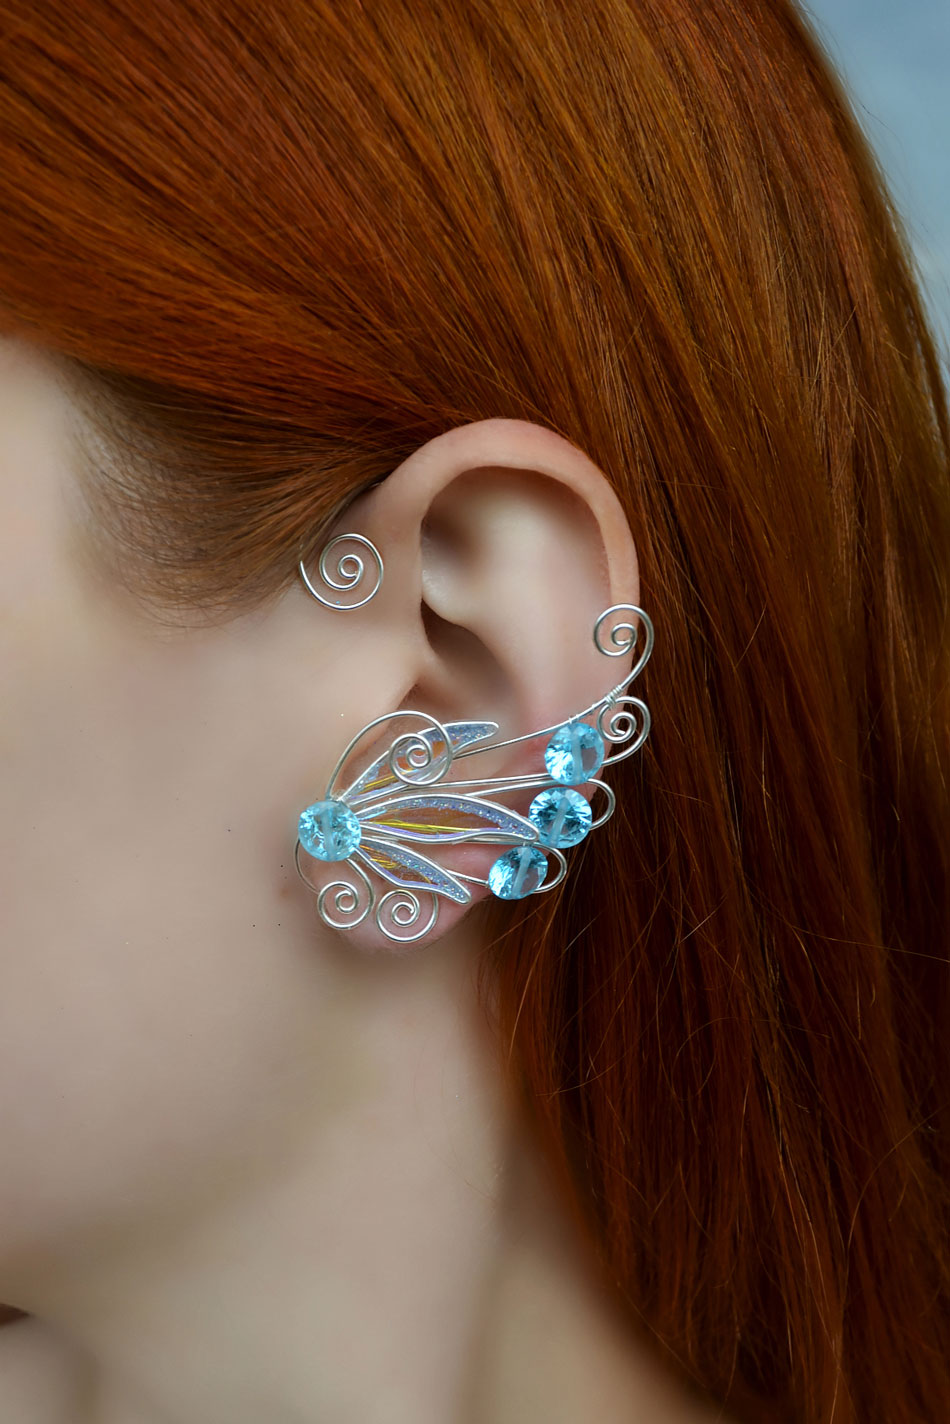 Fairy ear cuff earring blue